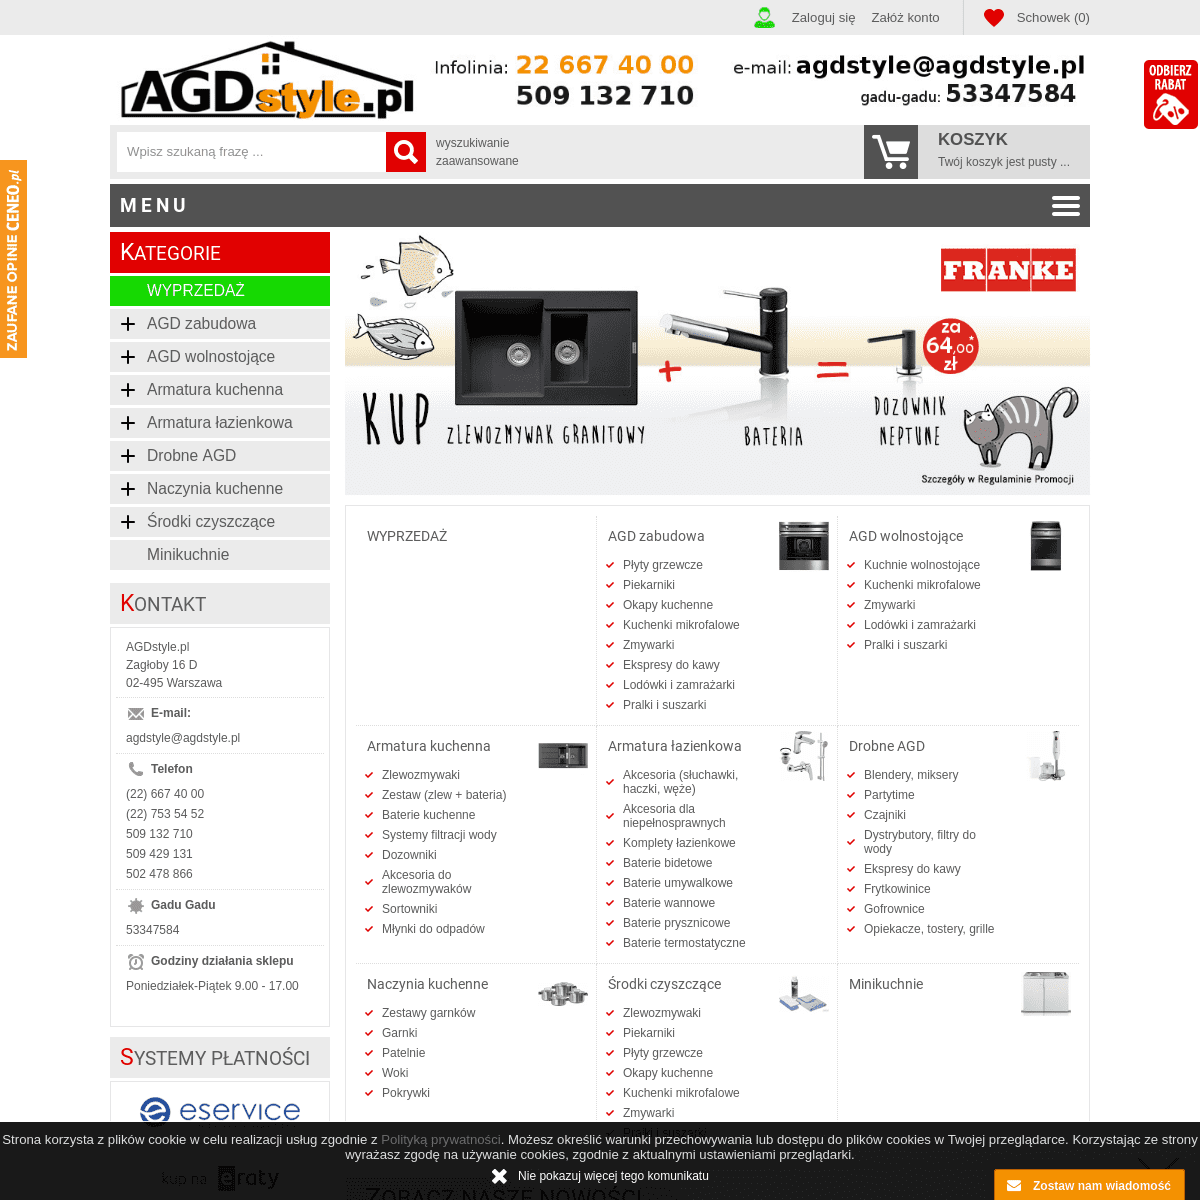 AGDstyle.pl - Urządzenia AGD i akcesoria do domu.